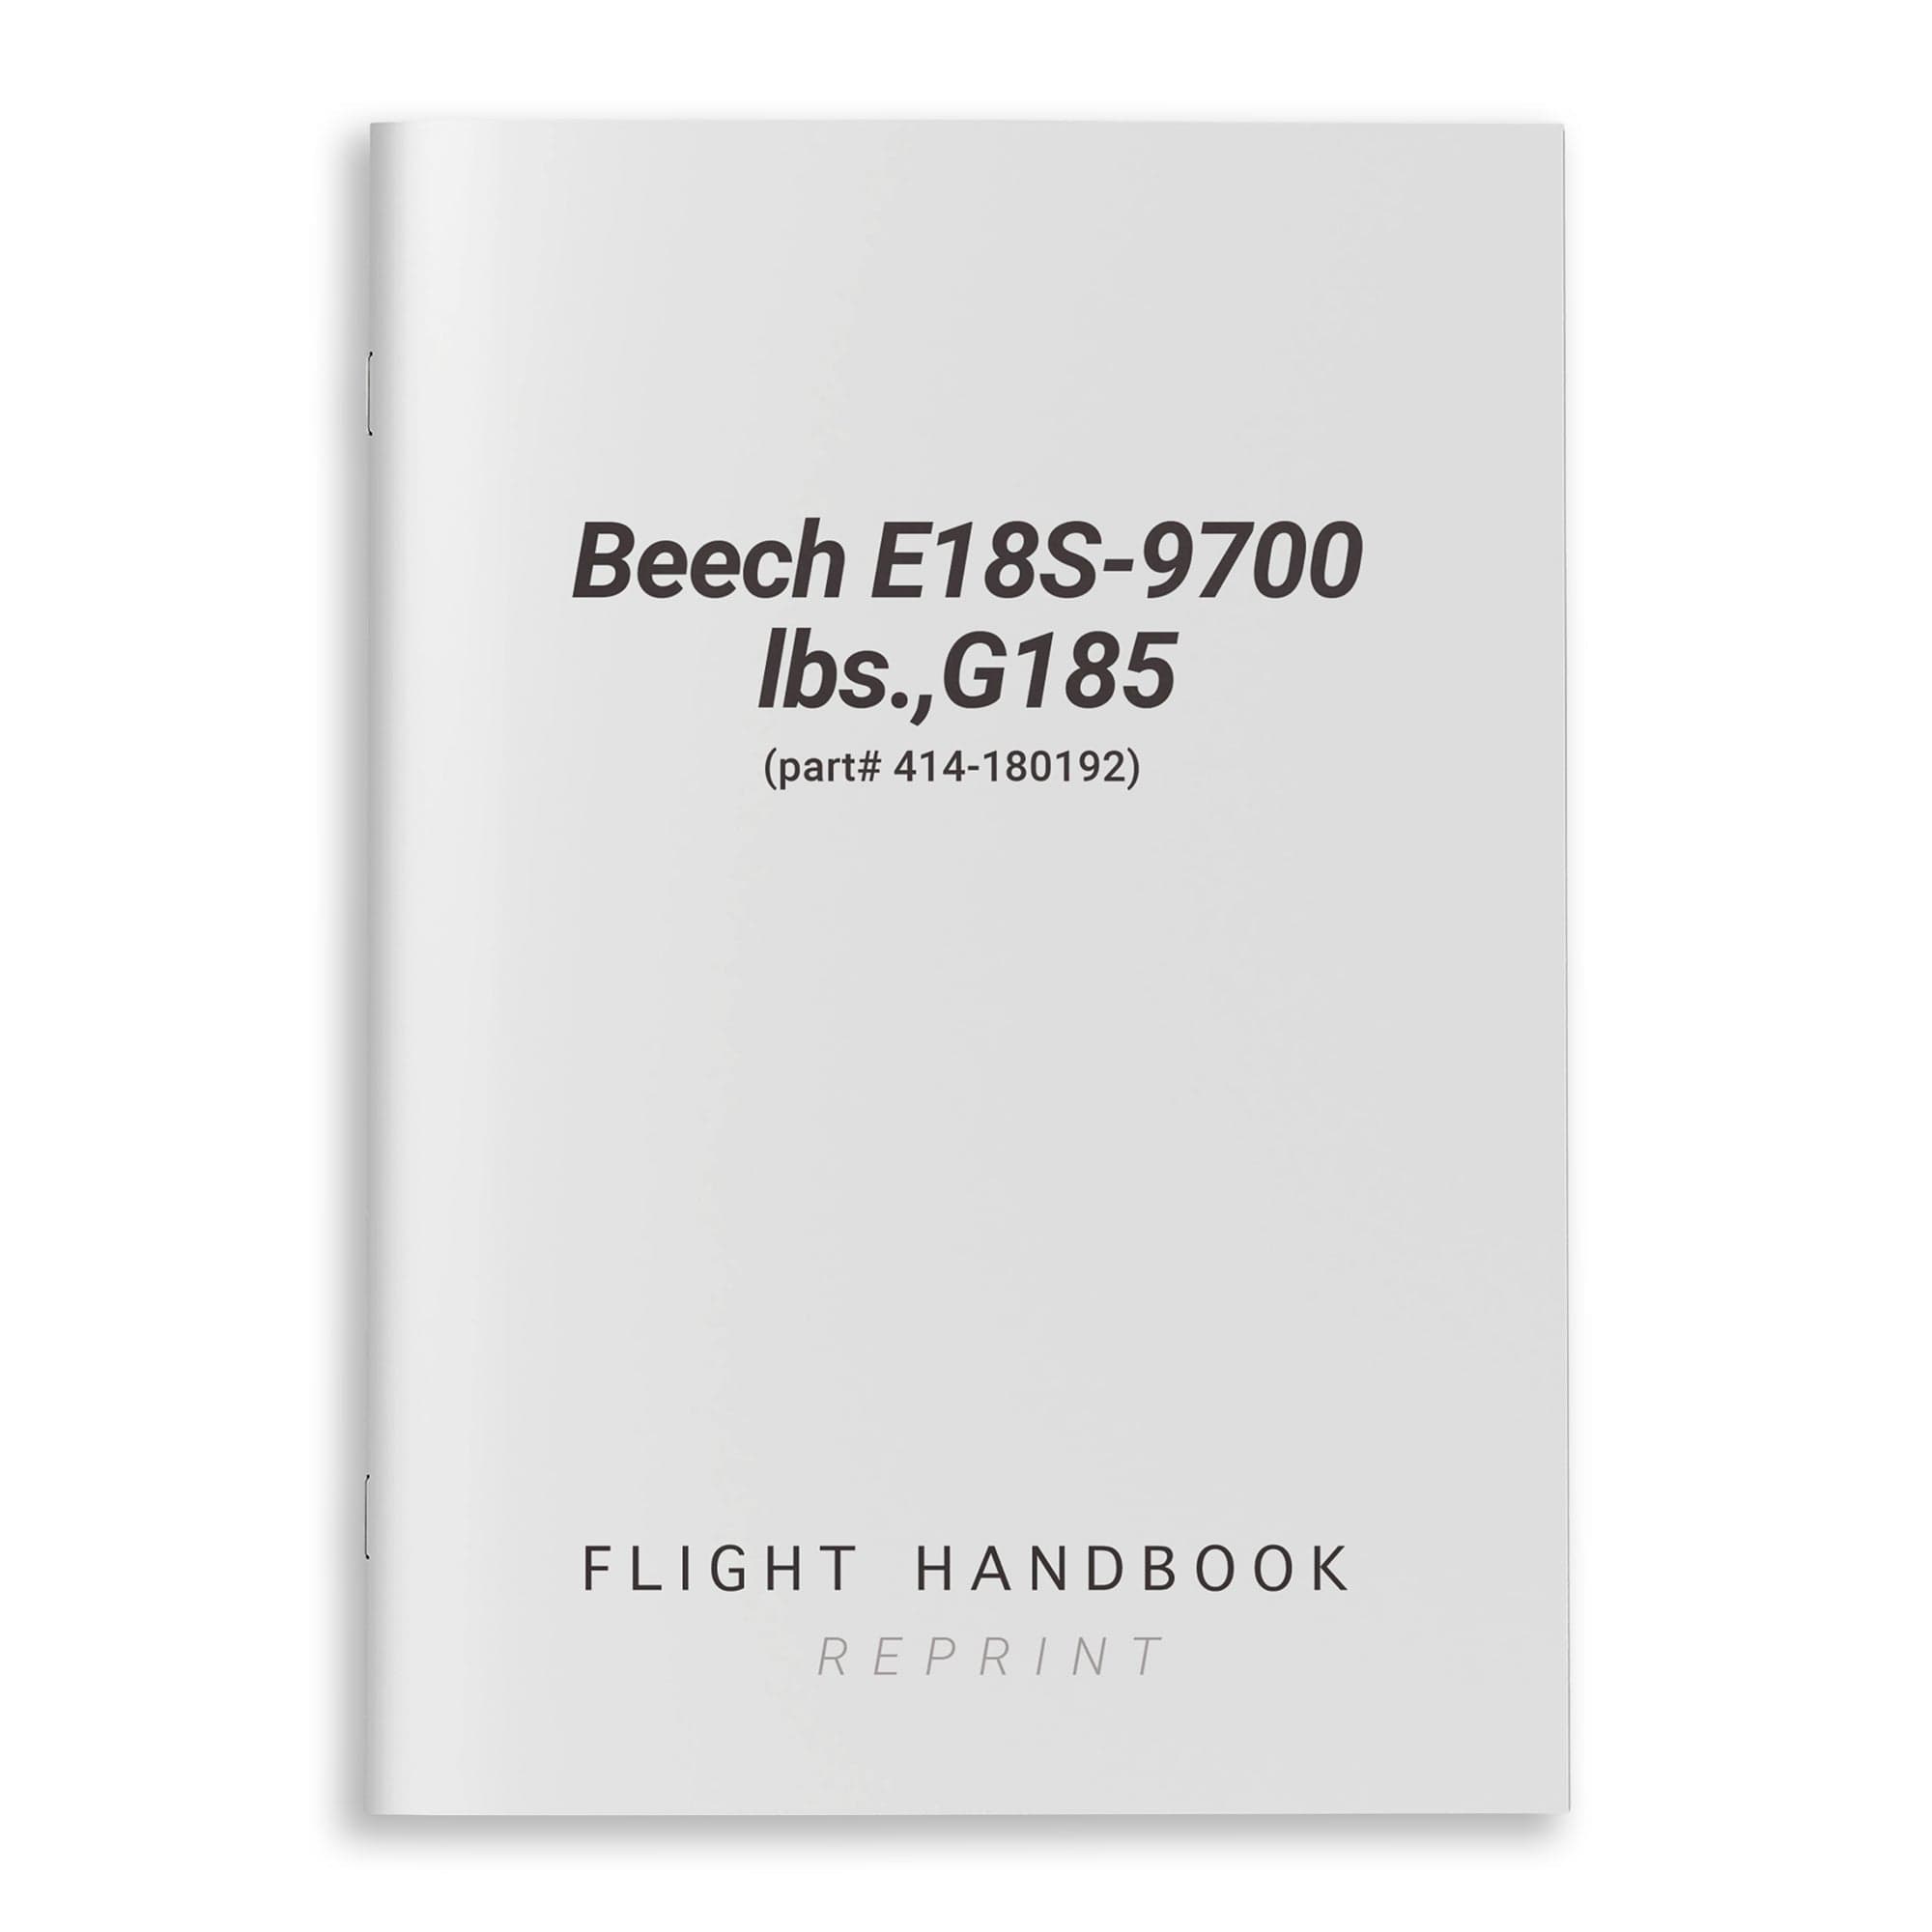 Beech E18S-9700 lbs. G185 Flight Handbook (part# 414-180192) - PilotMall.com